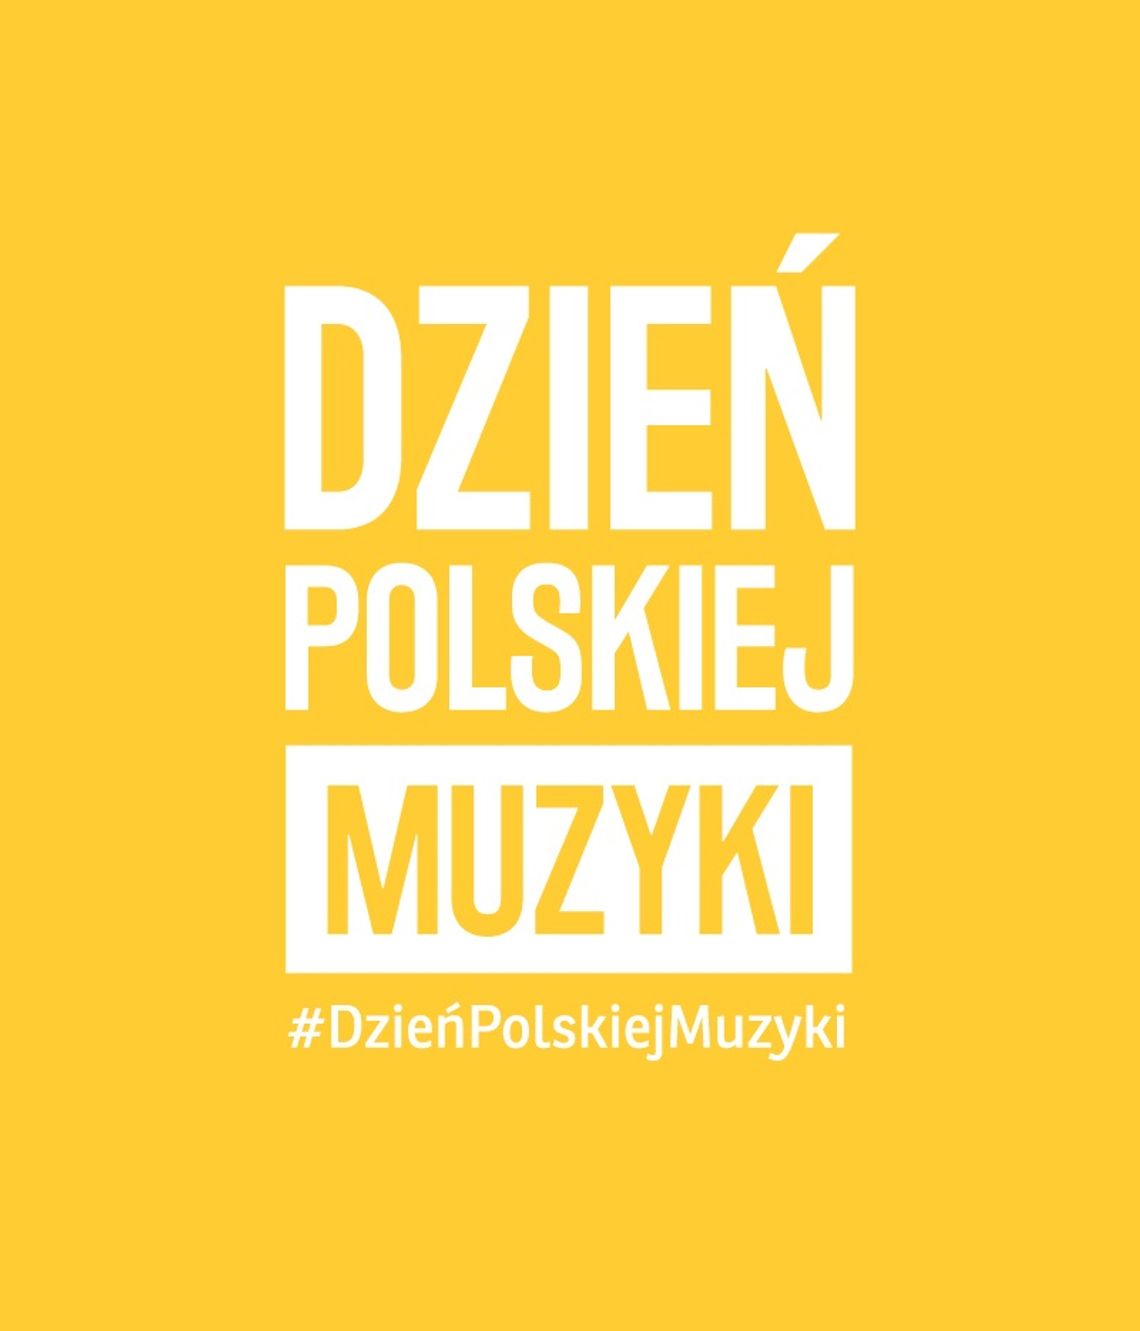 Dzień Polskiej Muzyki - 1 października 2021